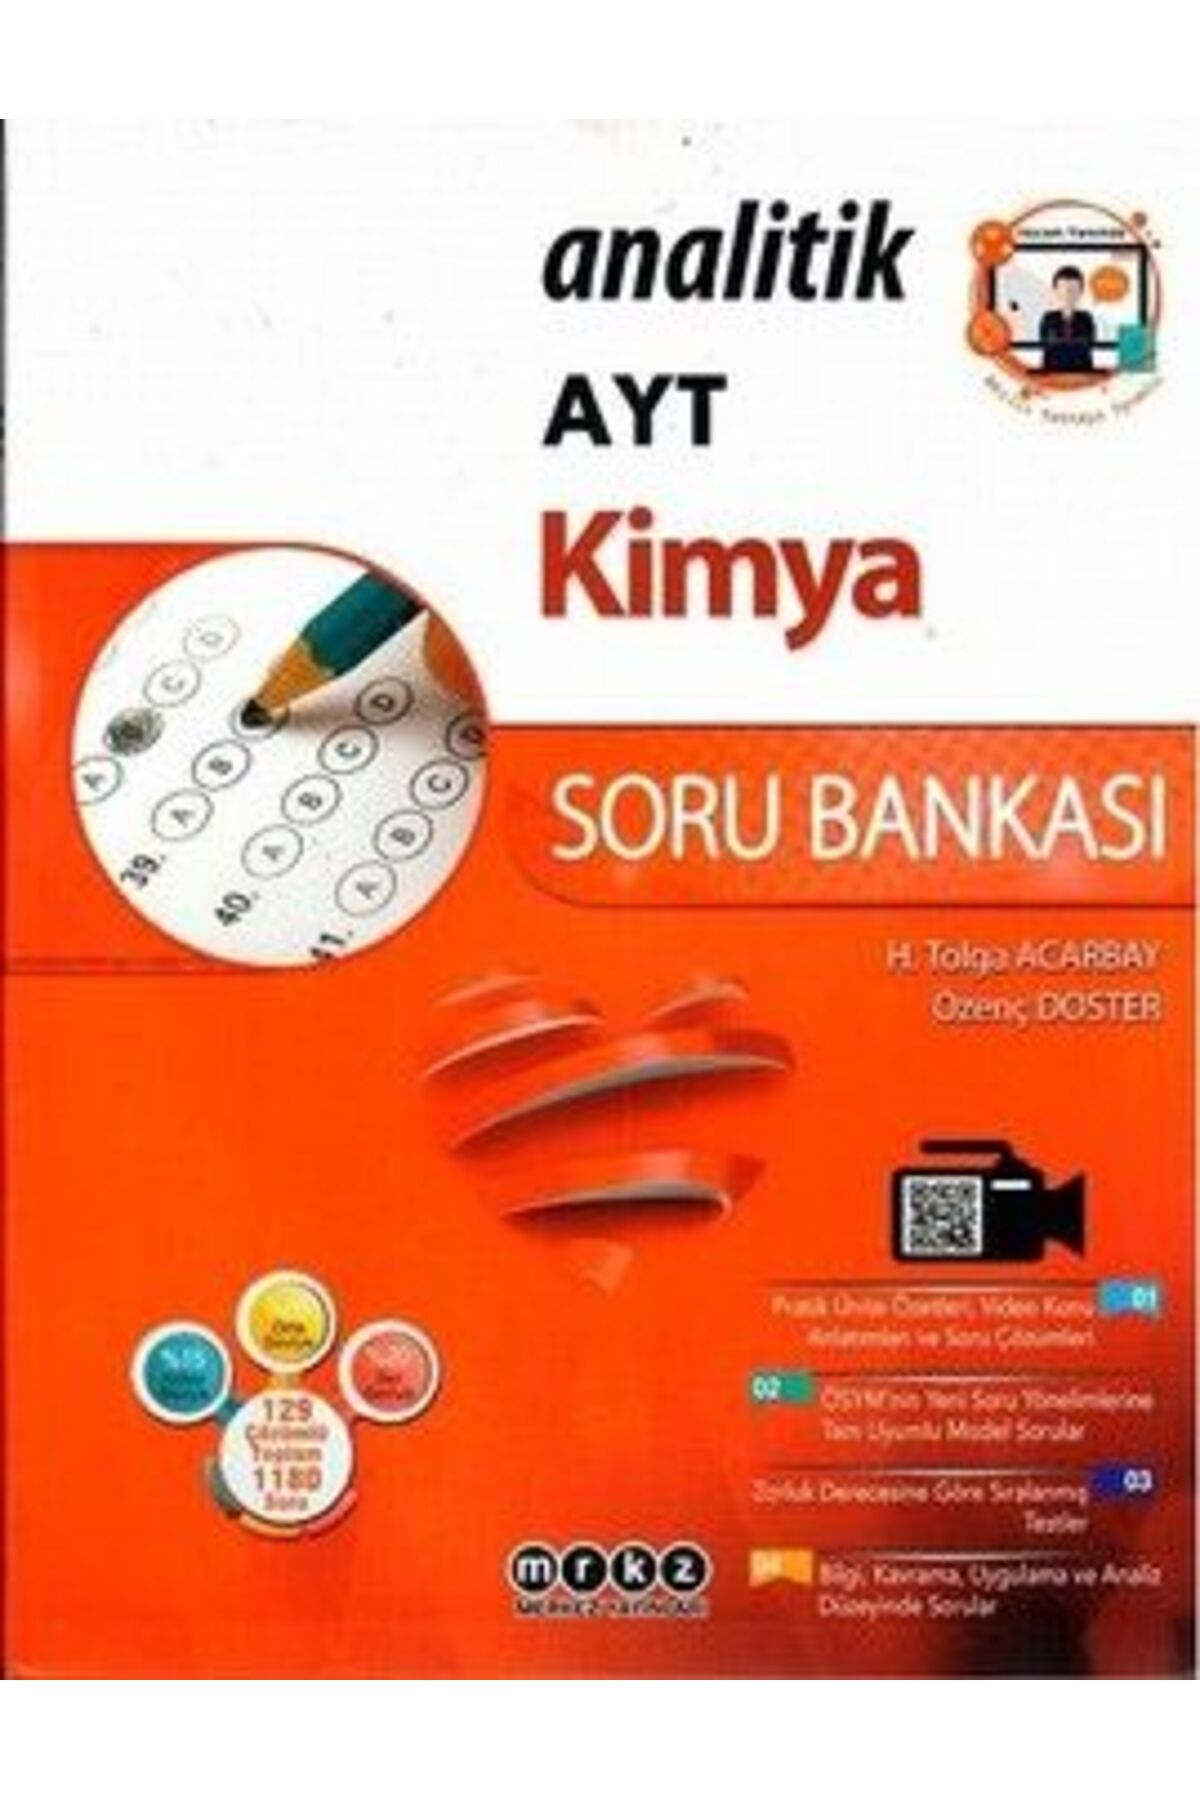 Merkez Yayınları Ayt Kimya Analitik Soru Bankası